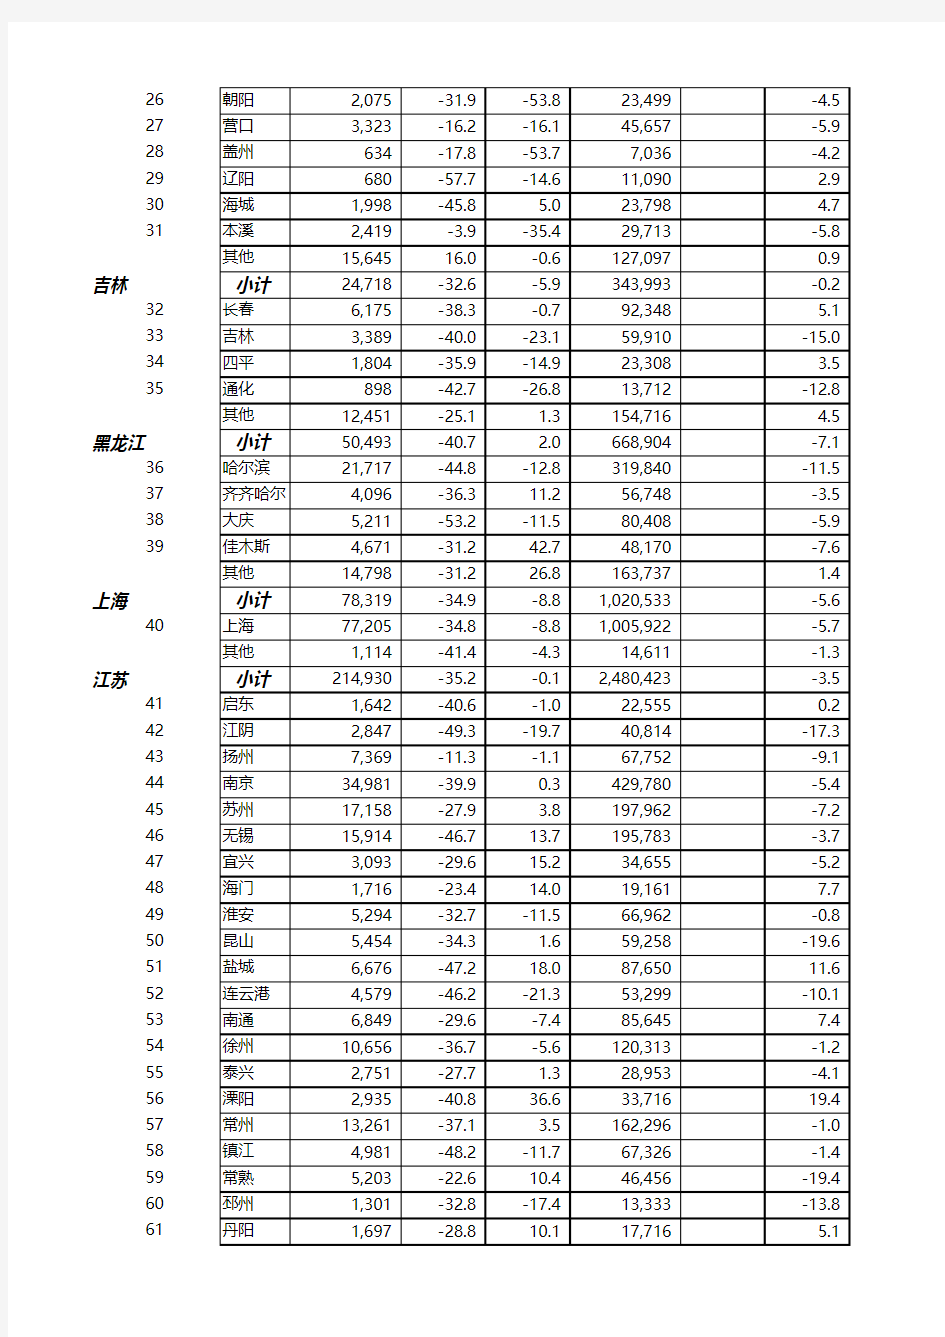 中怡康零售数据分析表-洗衣机2014年11月